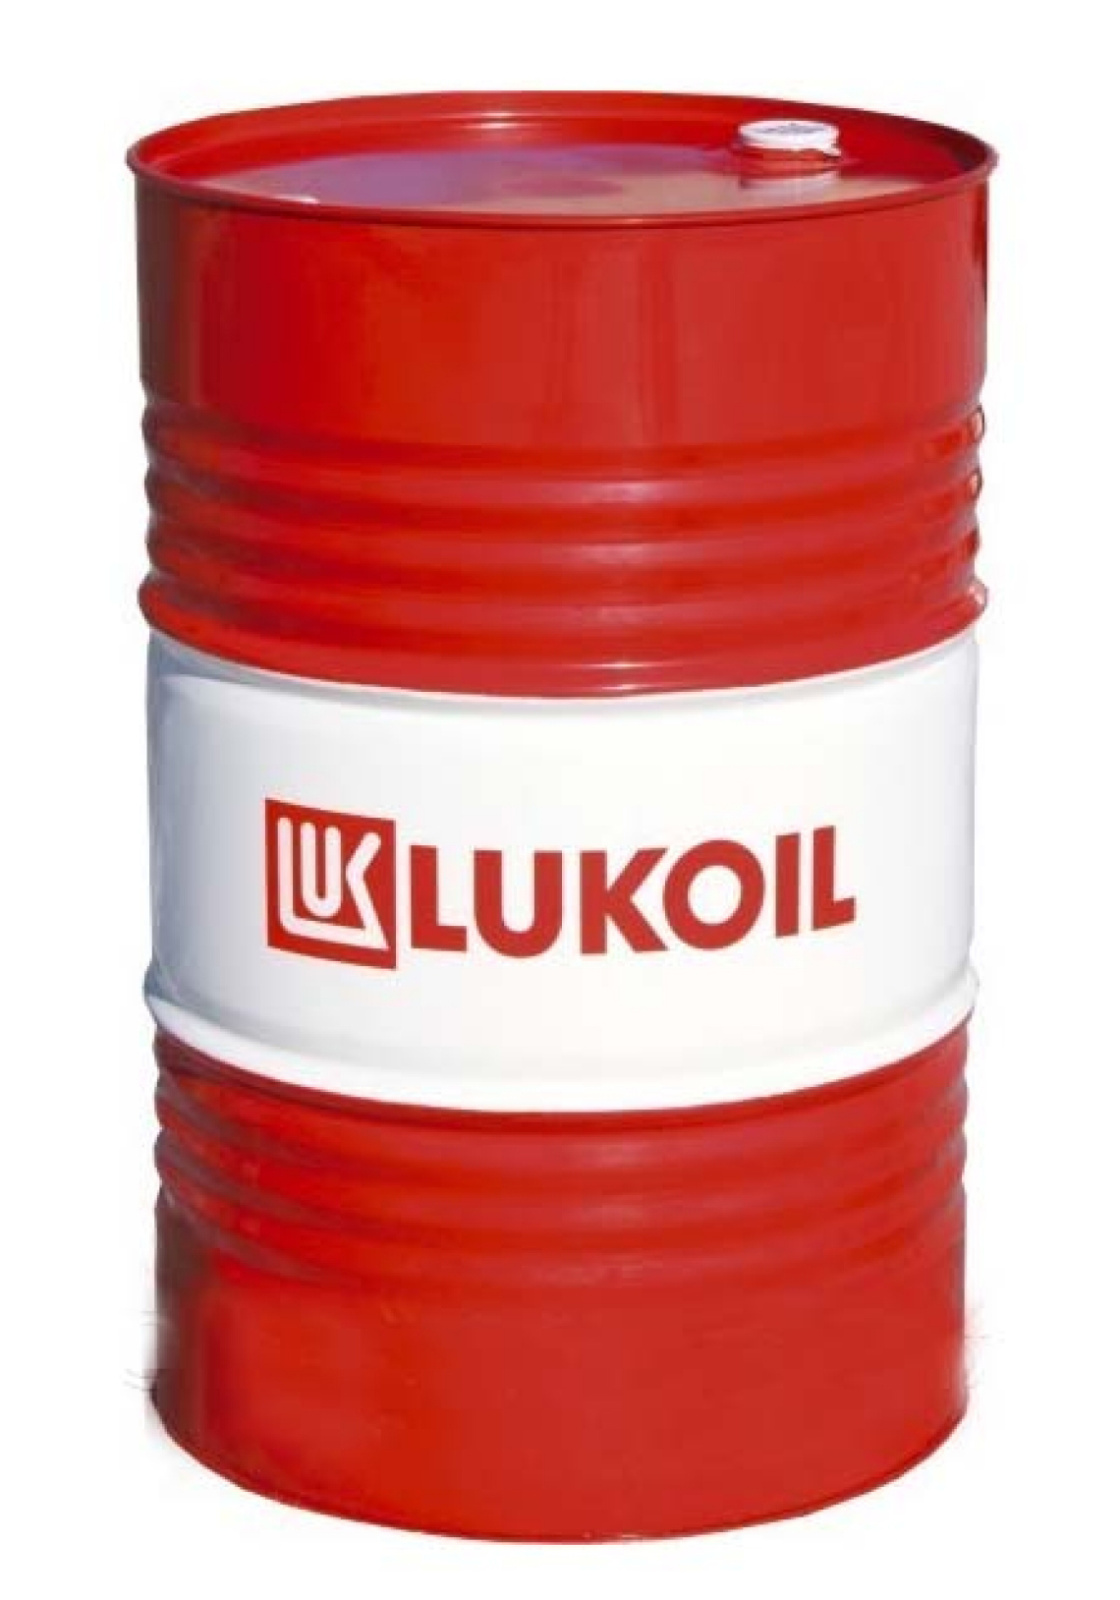 Моторное масло Lukoil полусинтетическое супер SG/CD 10W40 60л - купить в Москве, цены на Мегамаркет | 100055844565